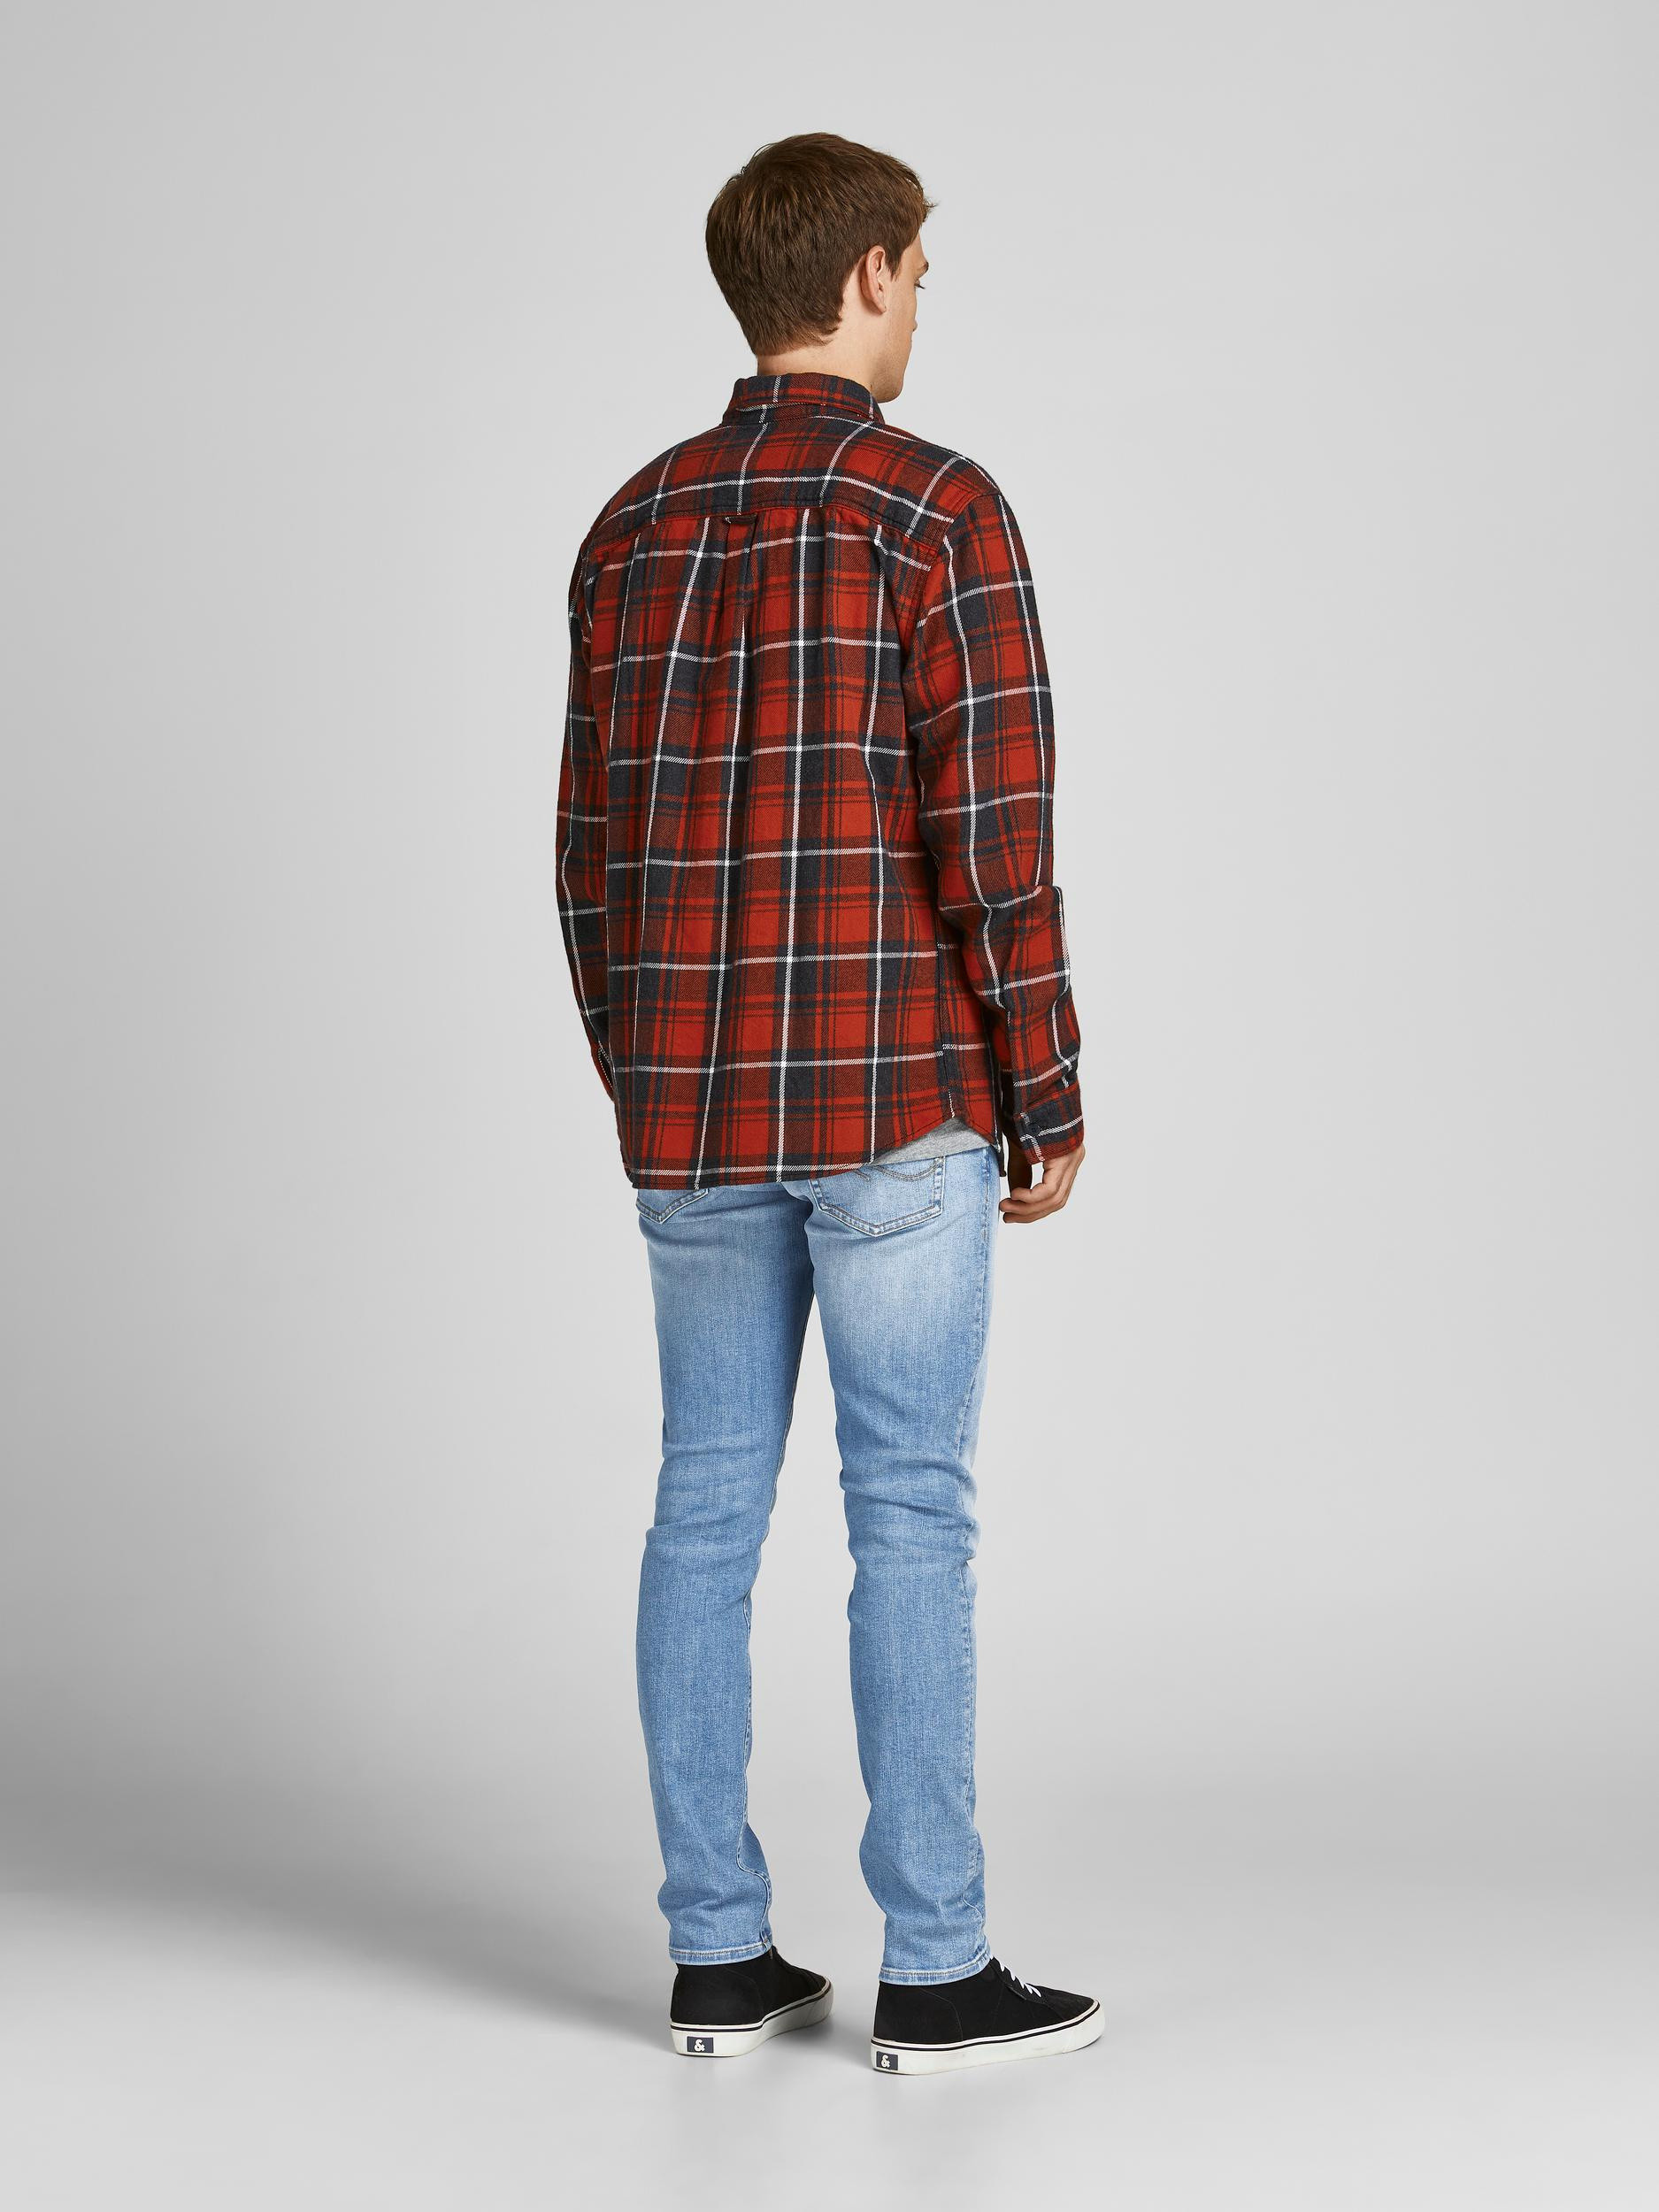 Jack & Jones - Slim fit five pocket jeans, Denim, large image number 3